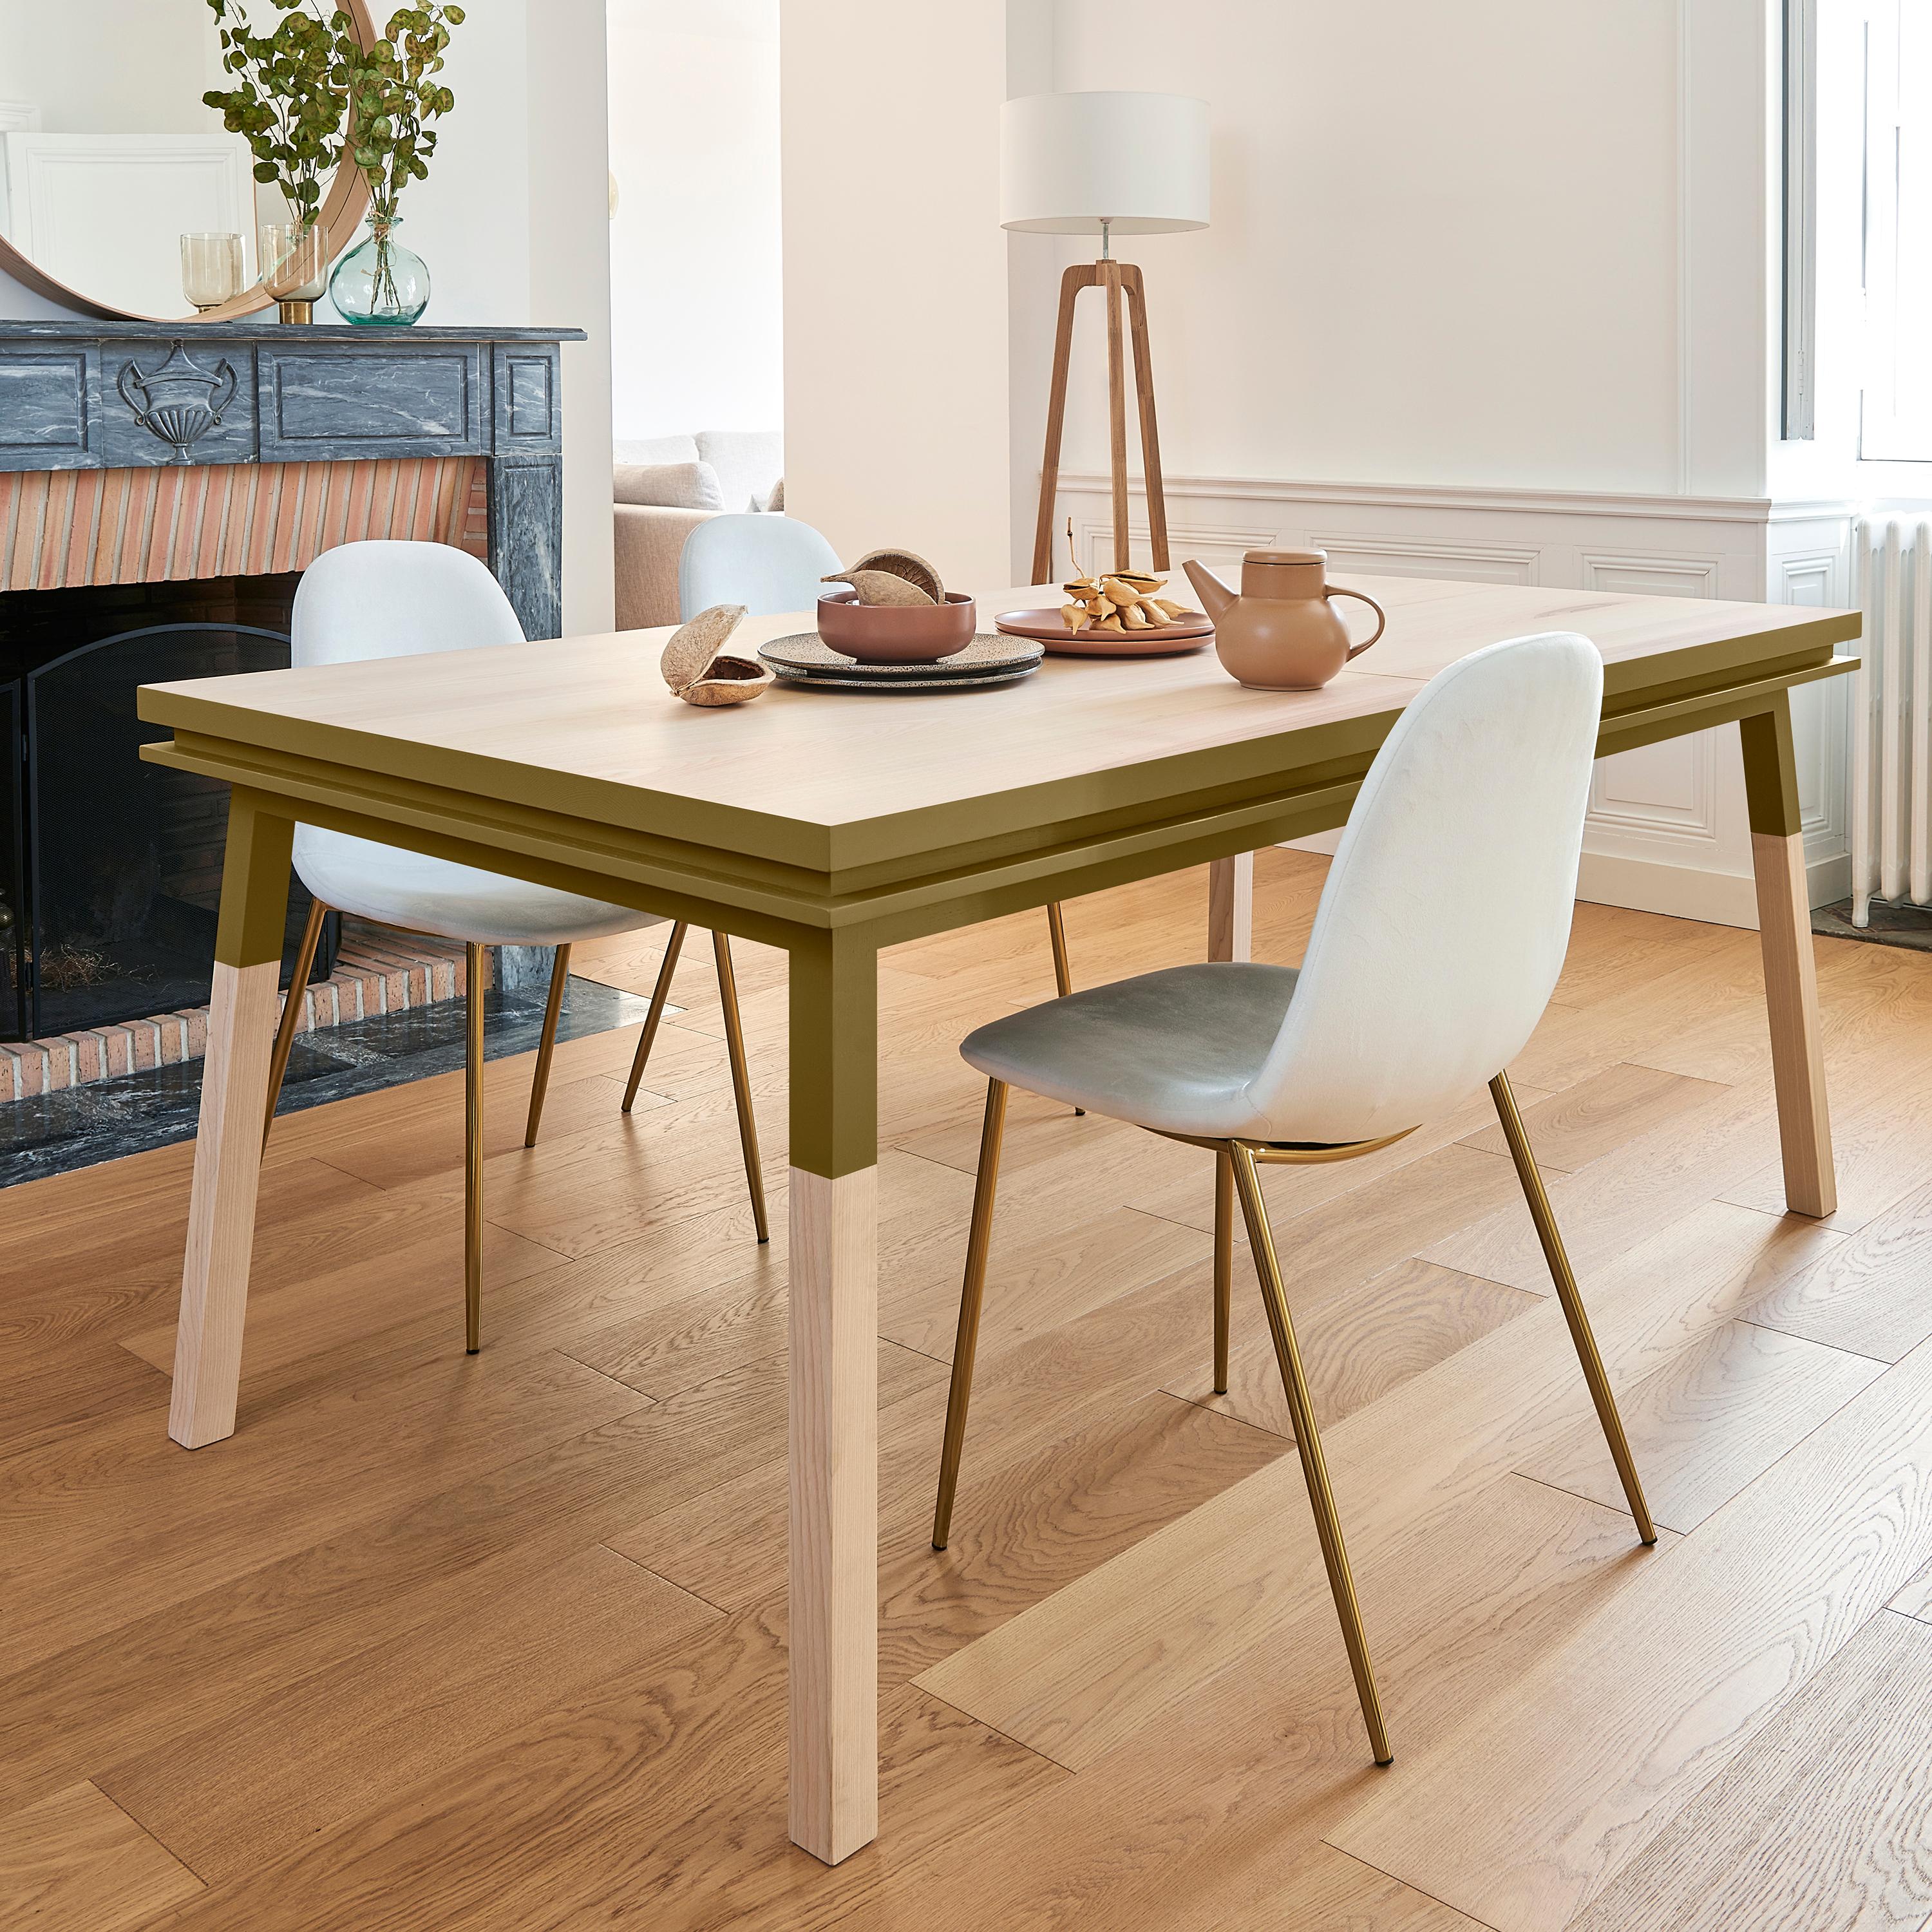 Cette table de salle à manger rectangulaire est proposée avec 1 extension intégrée et pliée. 

Il est fabriqué en bois de frêne 100% massif provenant de forêts françaises gérées durablement et certifiées PEFC.

Les 3 longueurs sont de 140 cm /